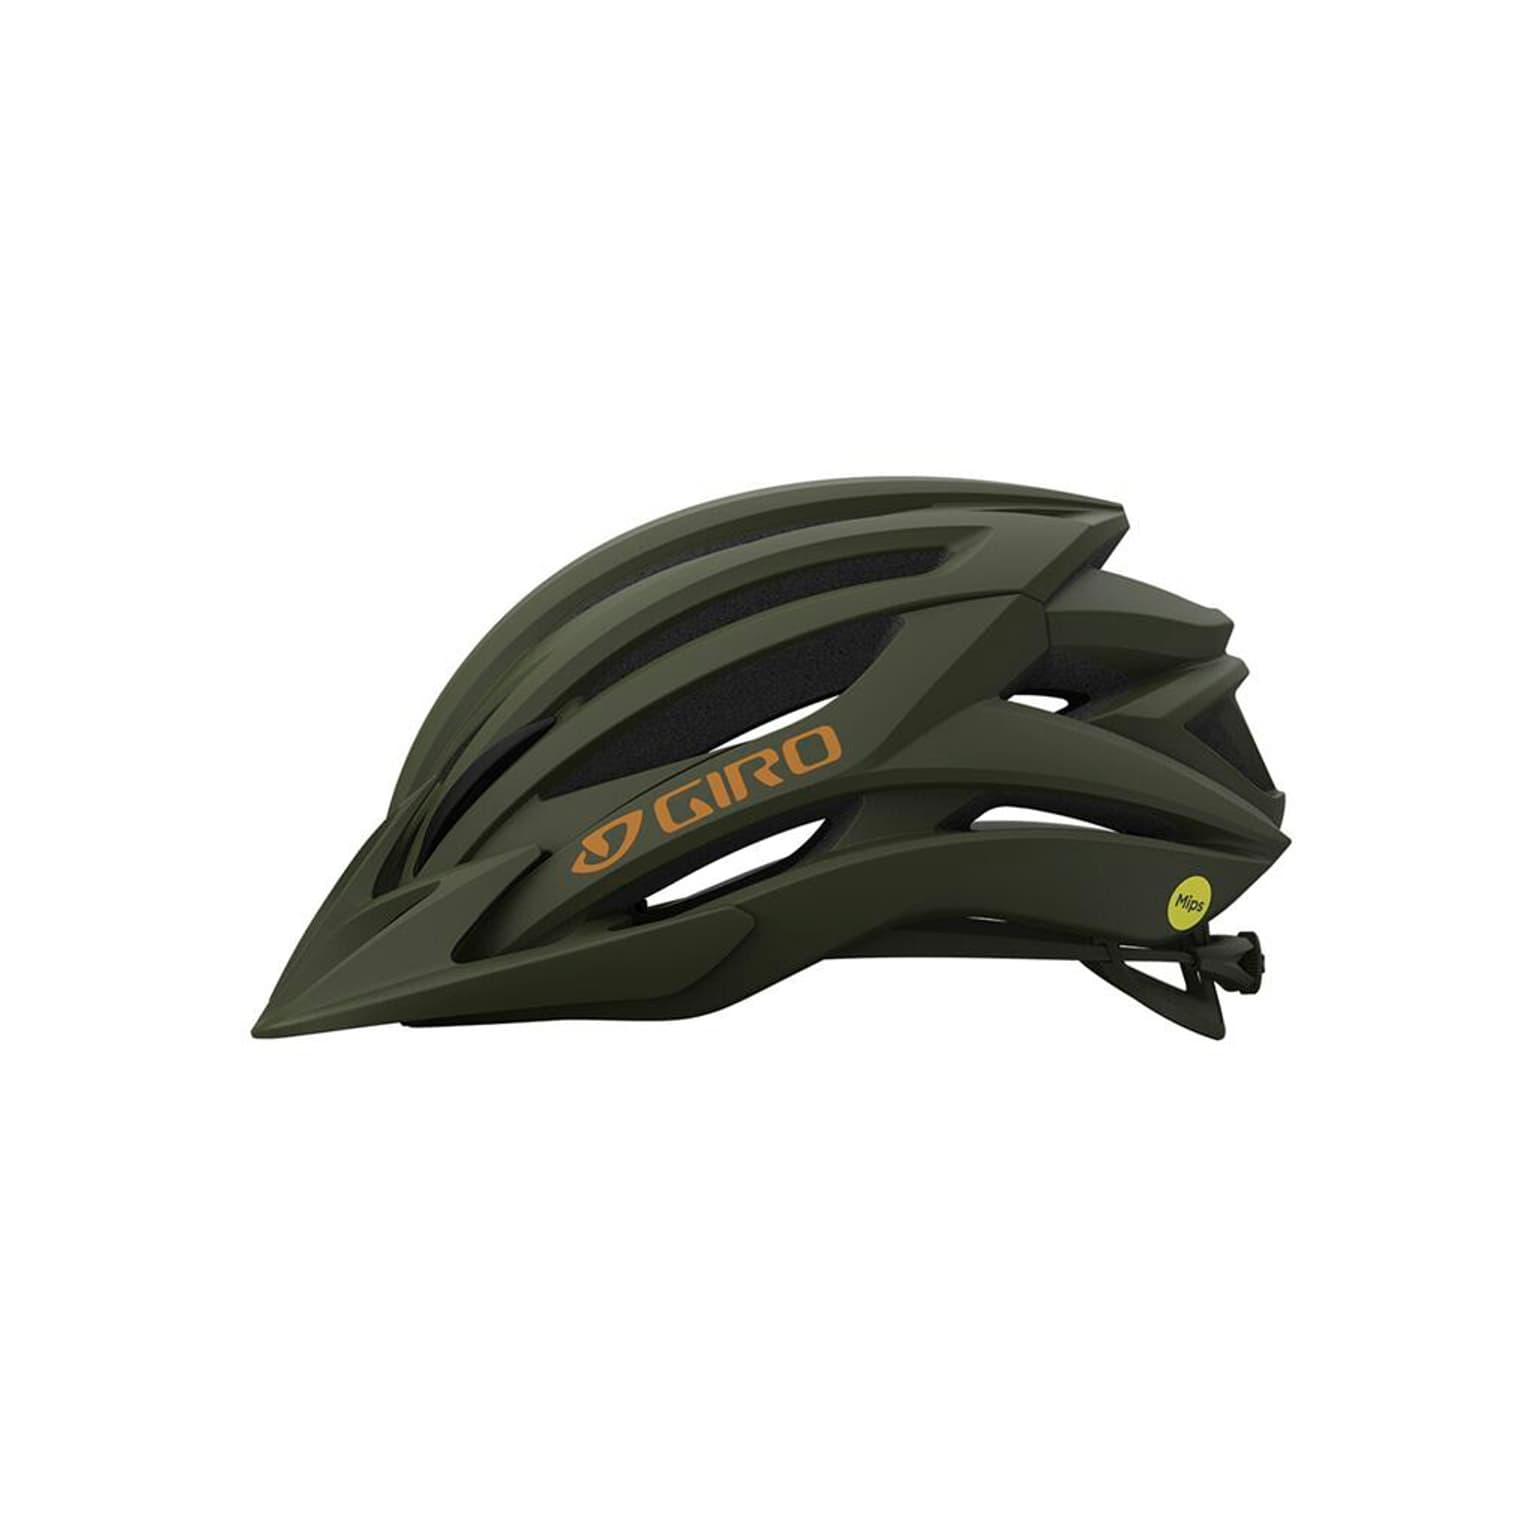 Giro Giro Artex MIPS Helmet Velohelm olive 2